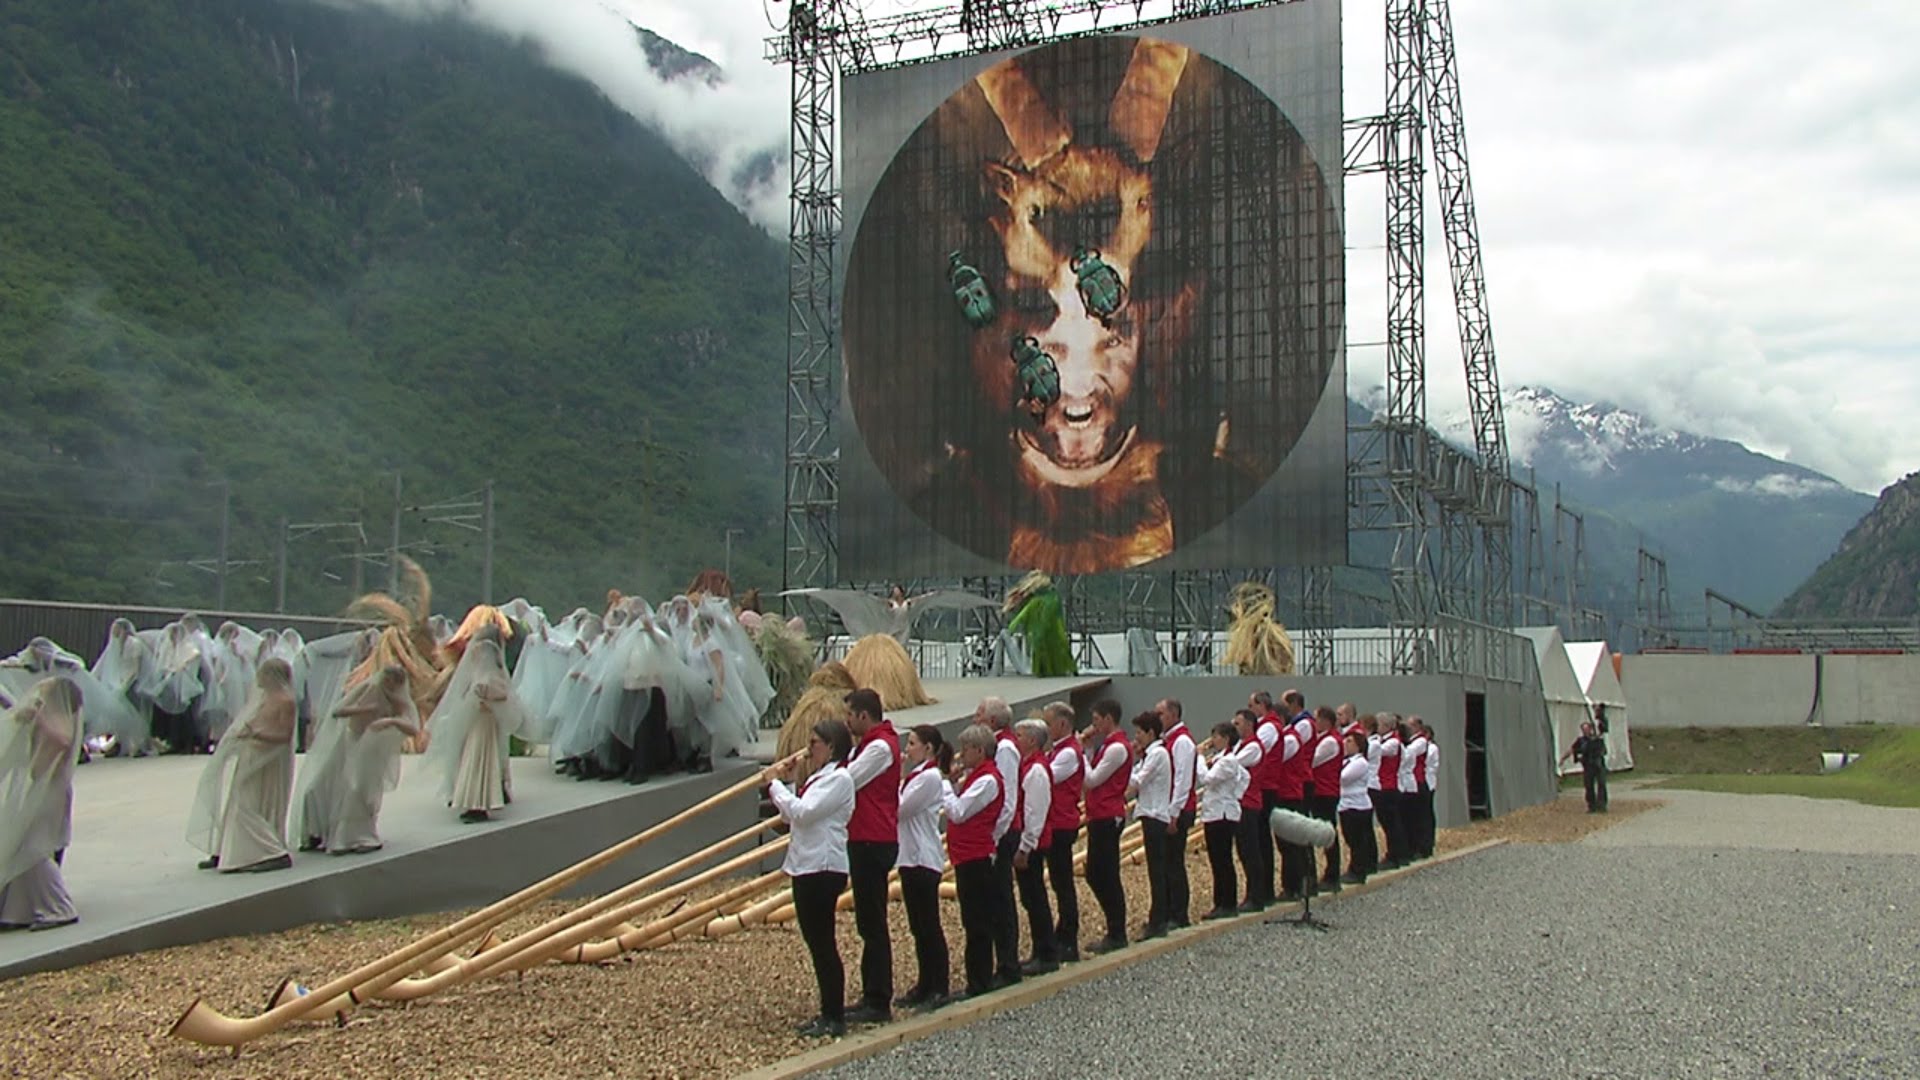 Descarada REPRESENTACIÓN SATÁNICA en la Inauguración del Túnel Más Largo del Mundo